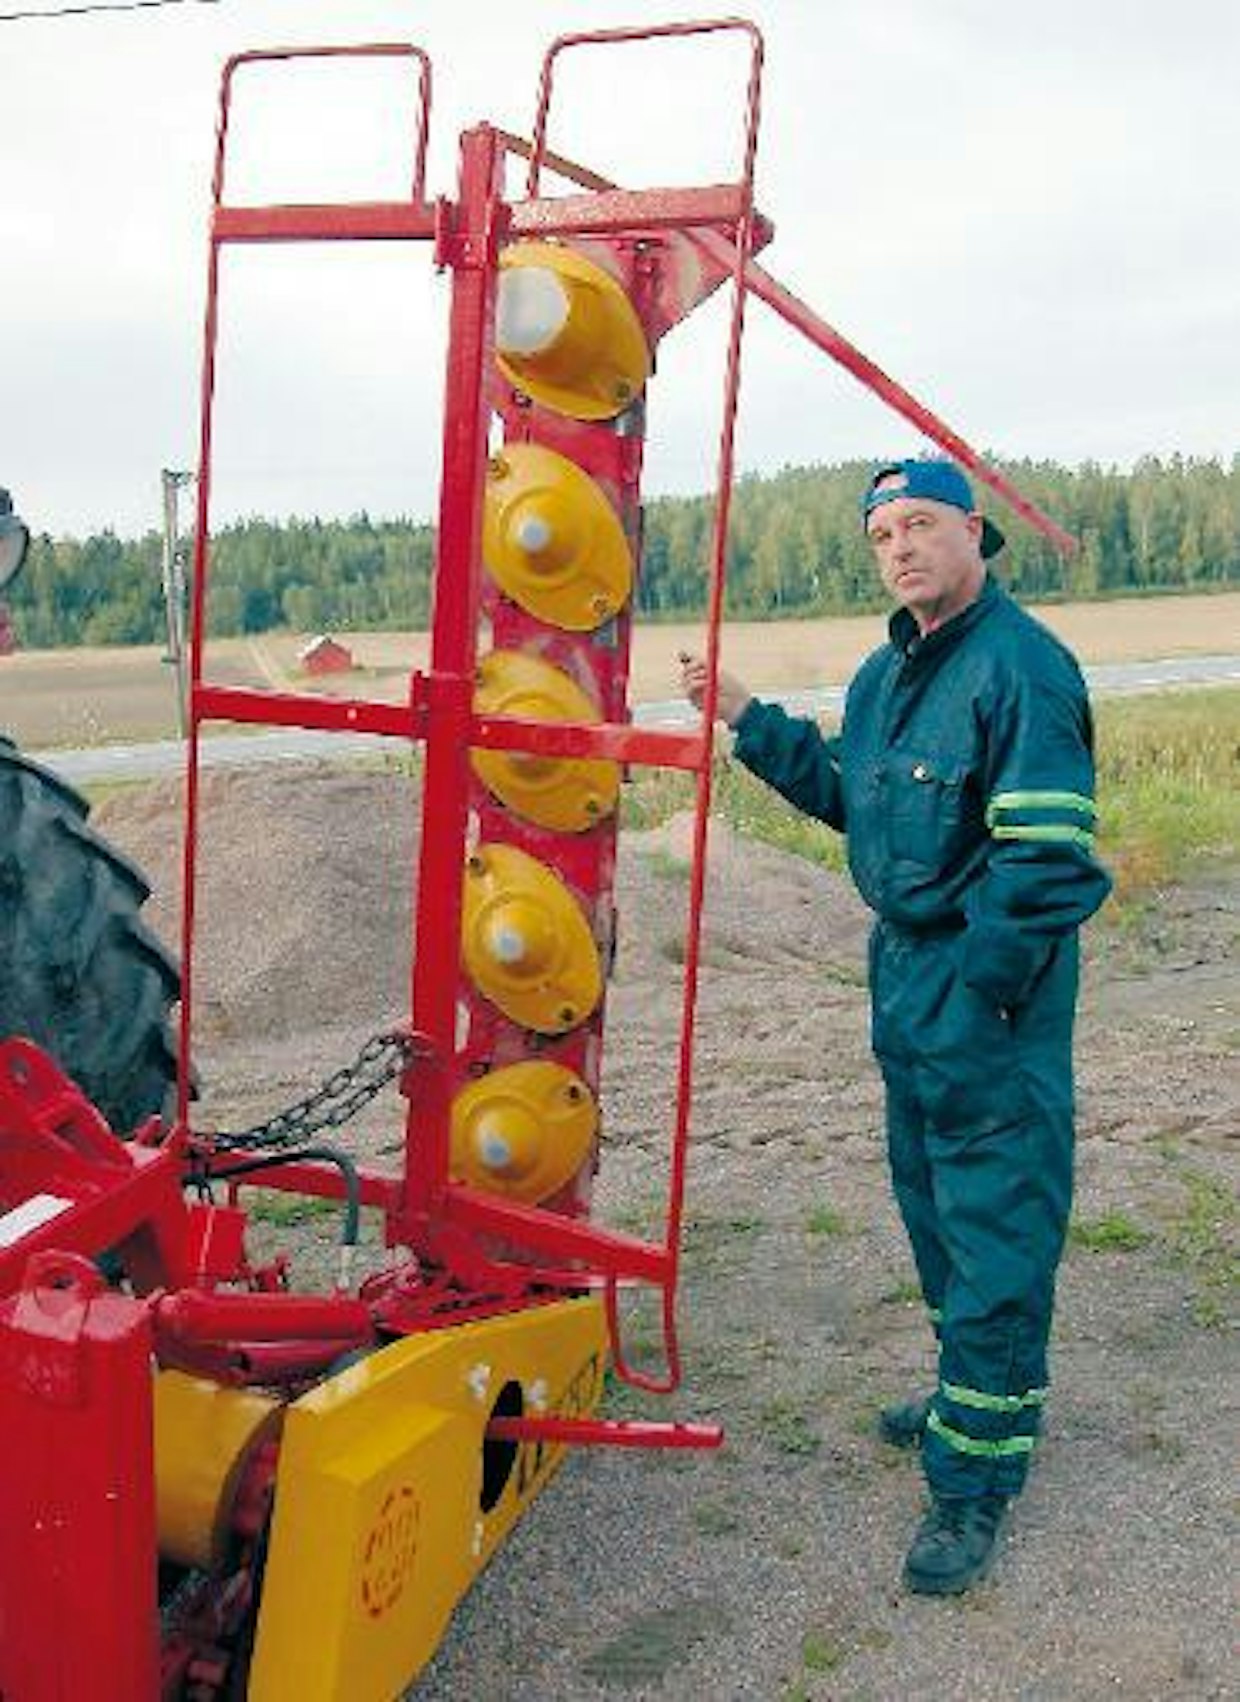 Maanviljelijä Mauri Nurmi Kiskon Orijärveltä tuli noutamaan ostamansa TEKO-lautasniittokoneen. Vaihtokoneena hän toi yritykseen Pomo-lautaniittokoneen, jonka remmivetoisuuteen hän oli jo kyllästynyt.